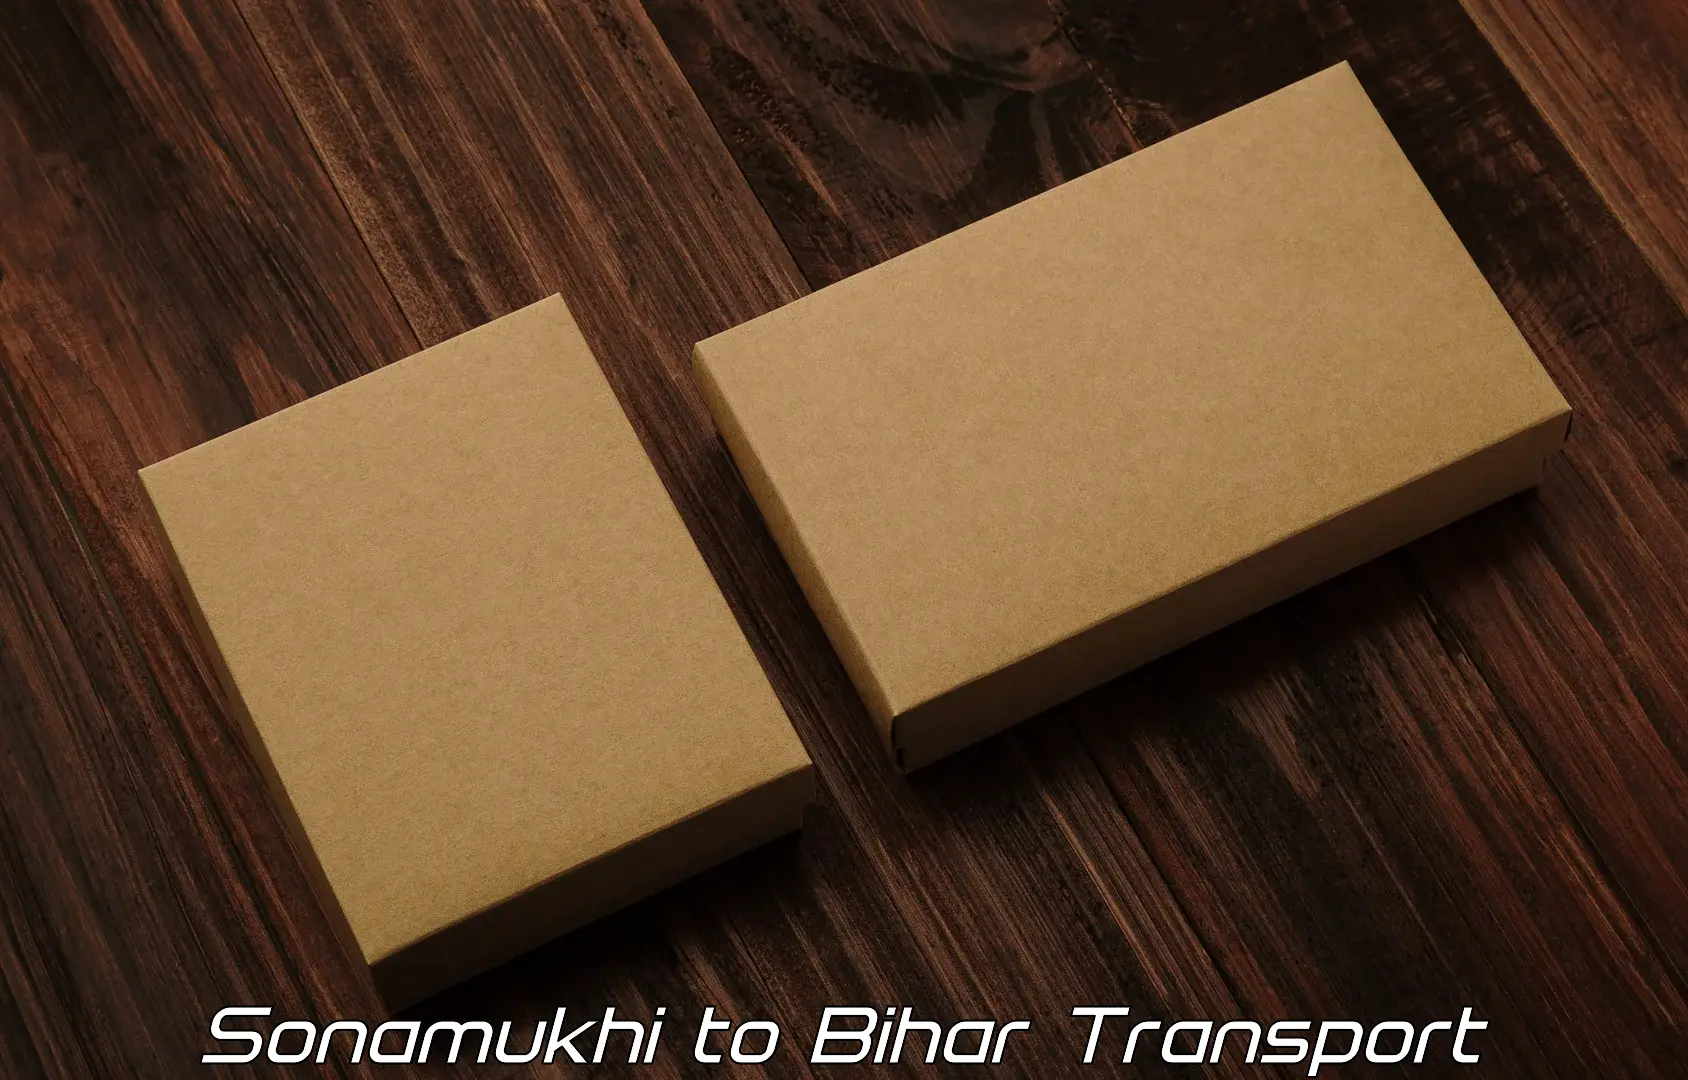 Nationwide transport services Sonamukhi to Aurangabad Bihar